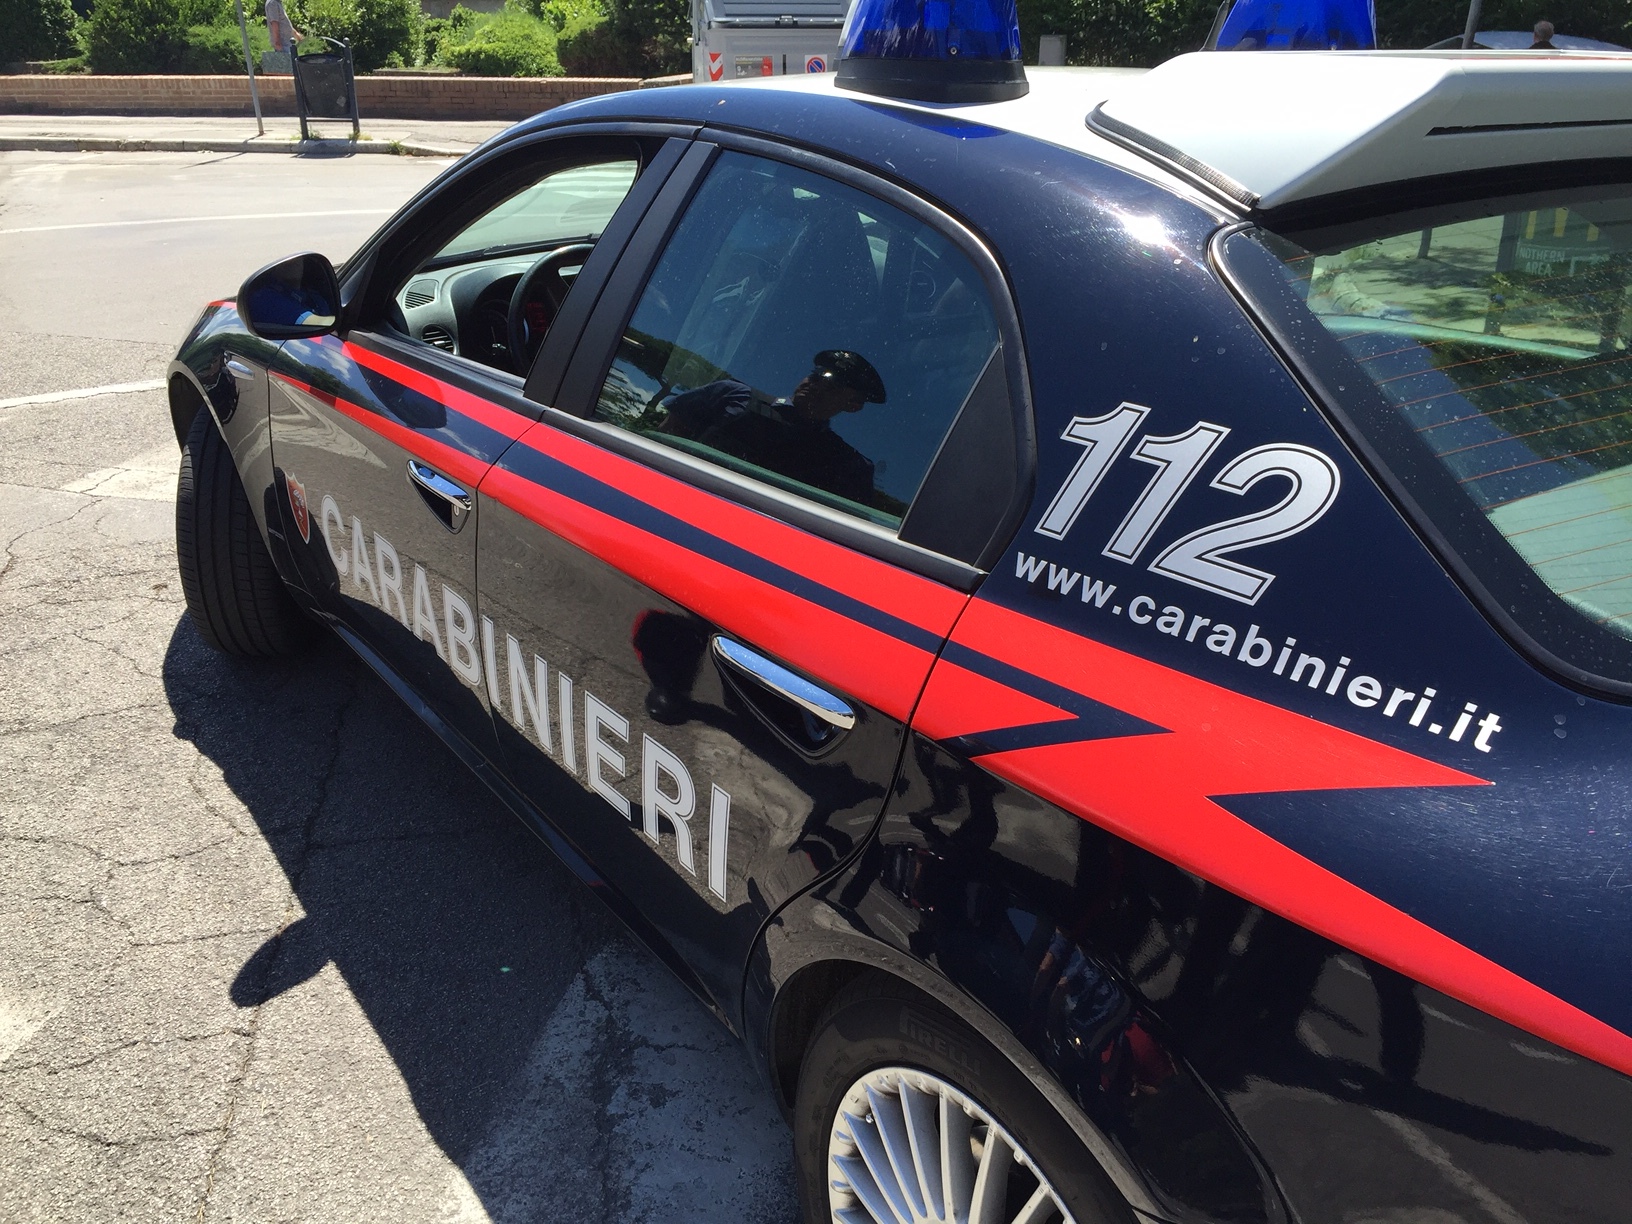 Offre droga a Carabinieri, arrestato. «Troppo spesso la società non aiuta chi vive ai margini»